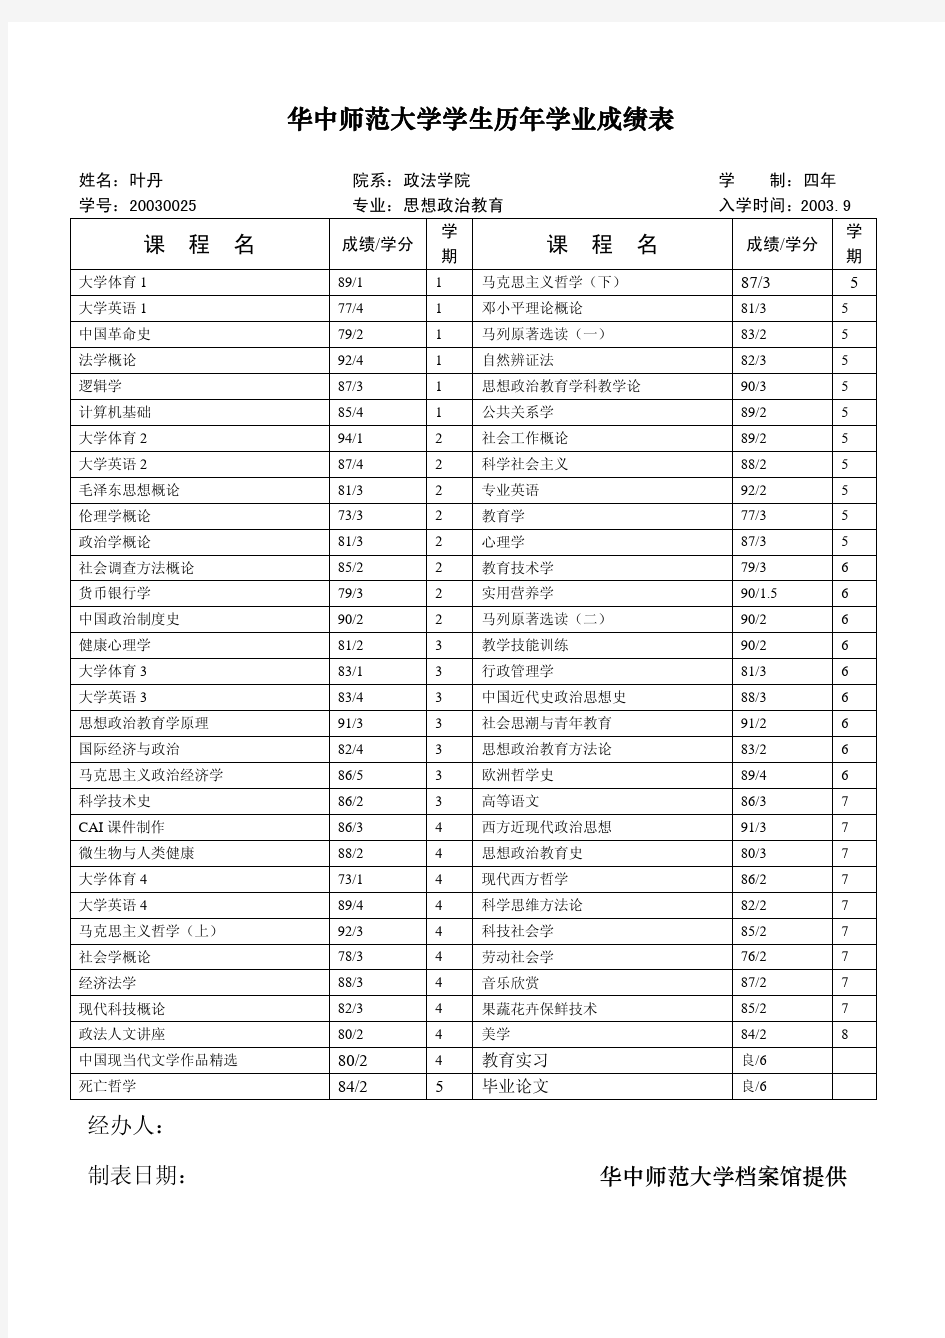 华中师范大学学生历年学业成绩表